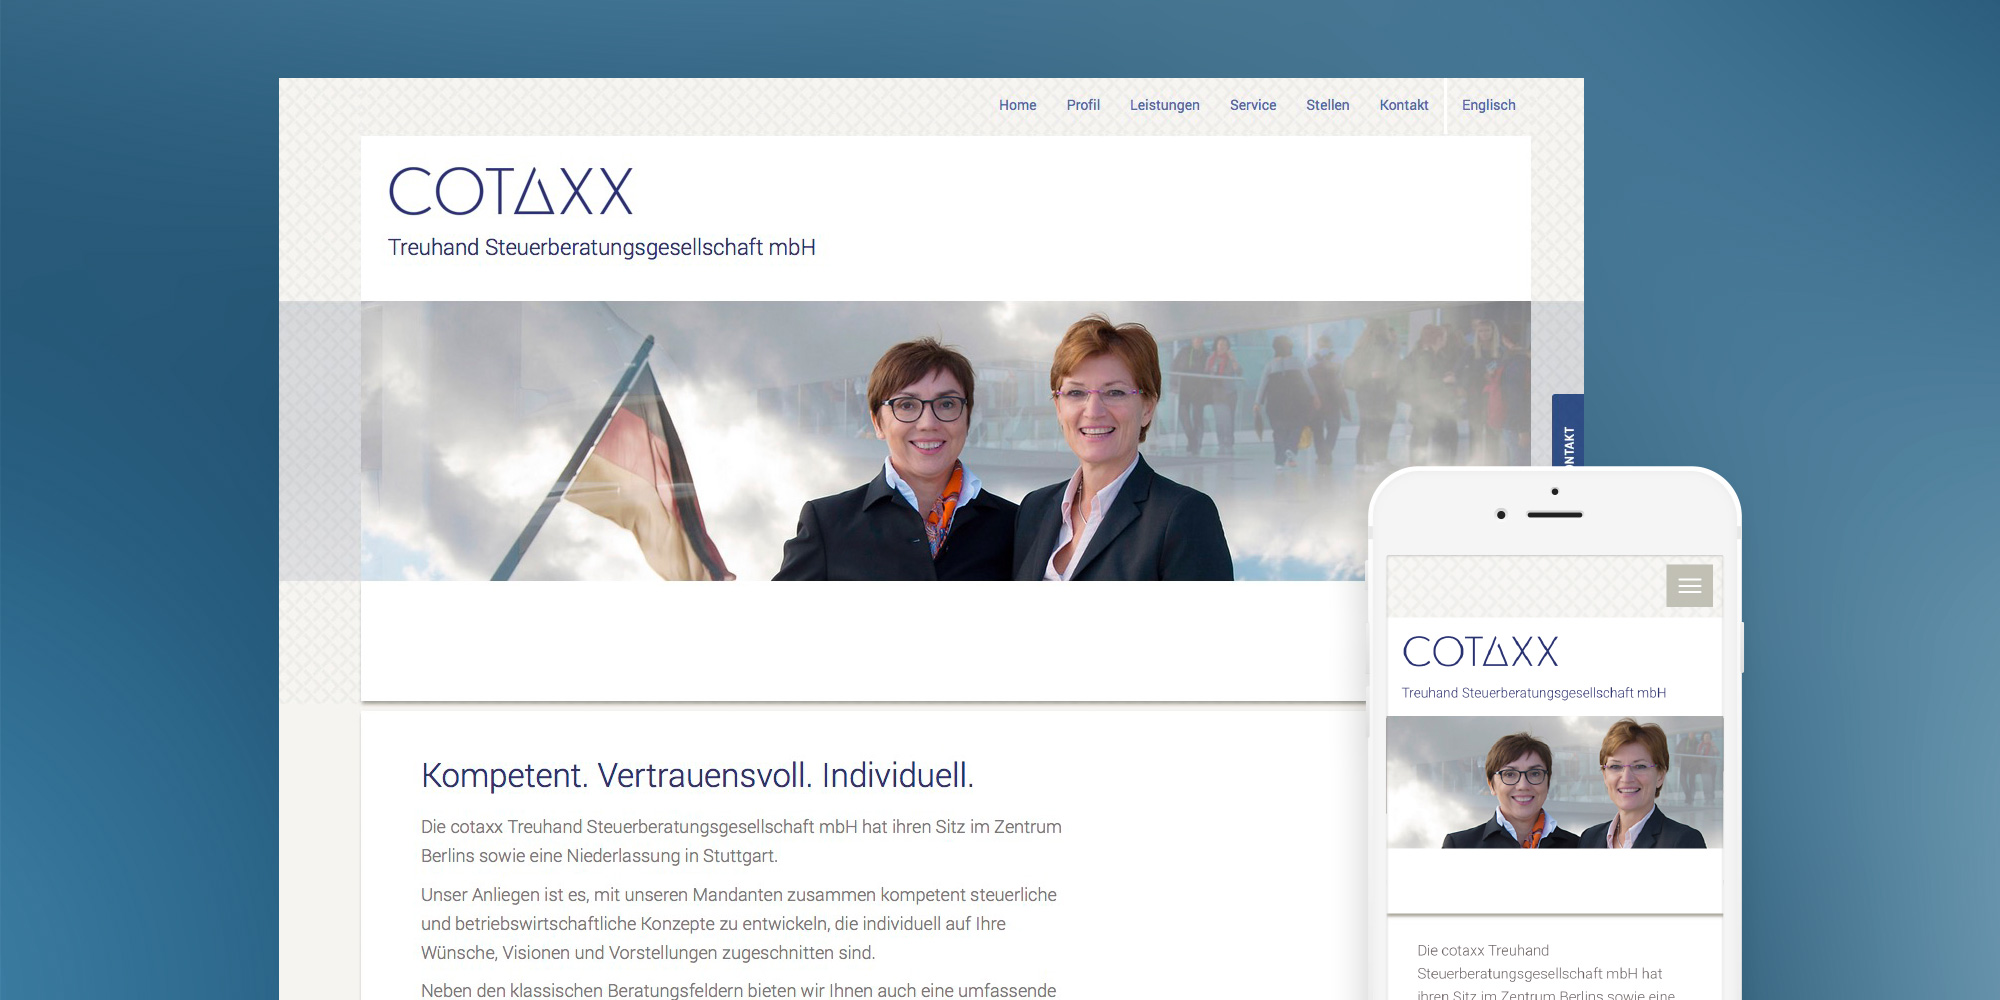 Die Website für Cotaxx auf verschiedenen Devices